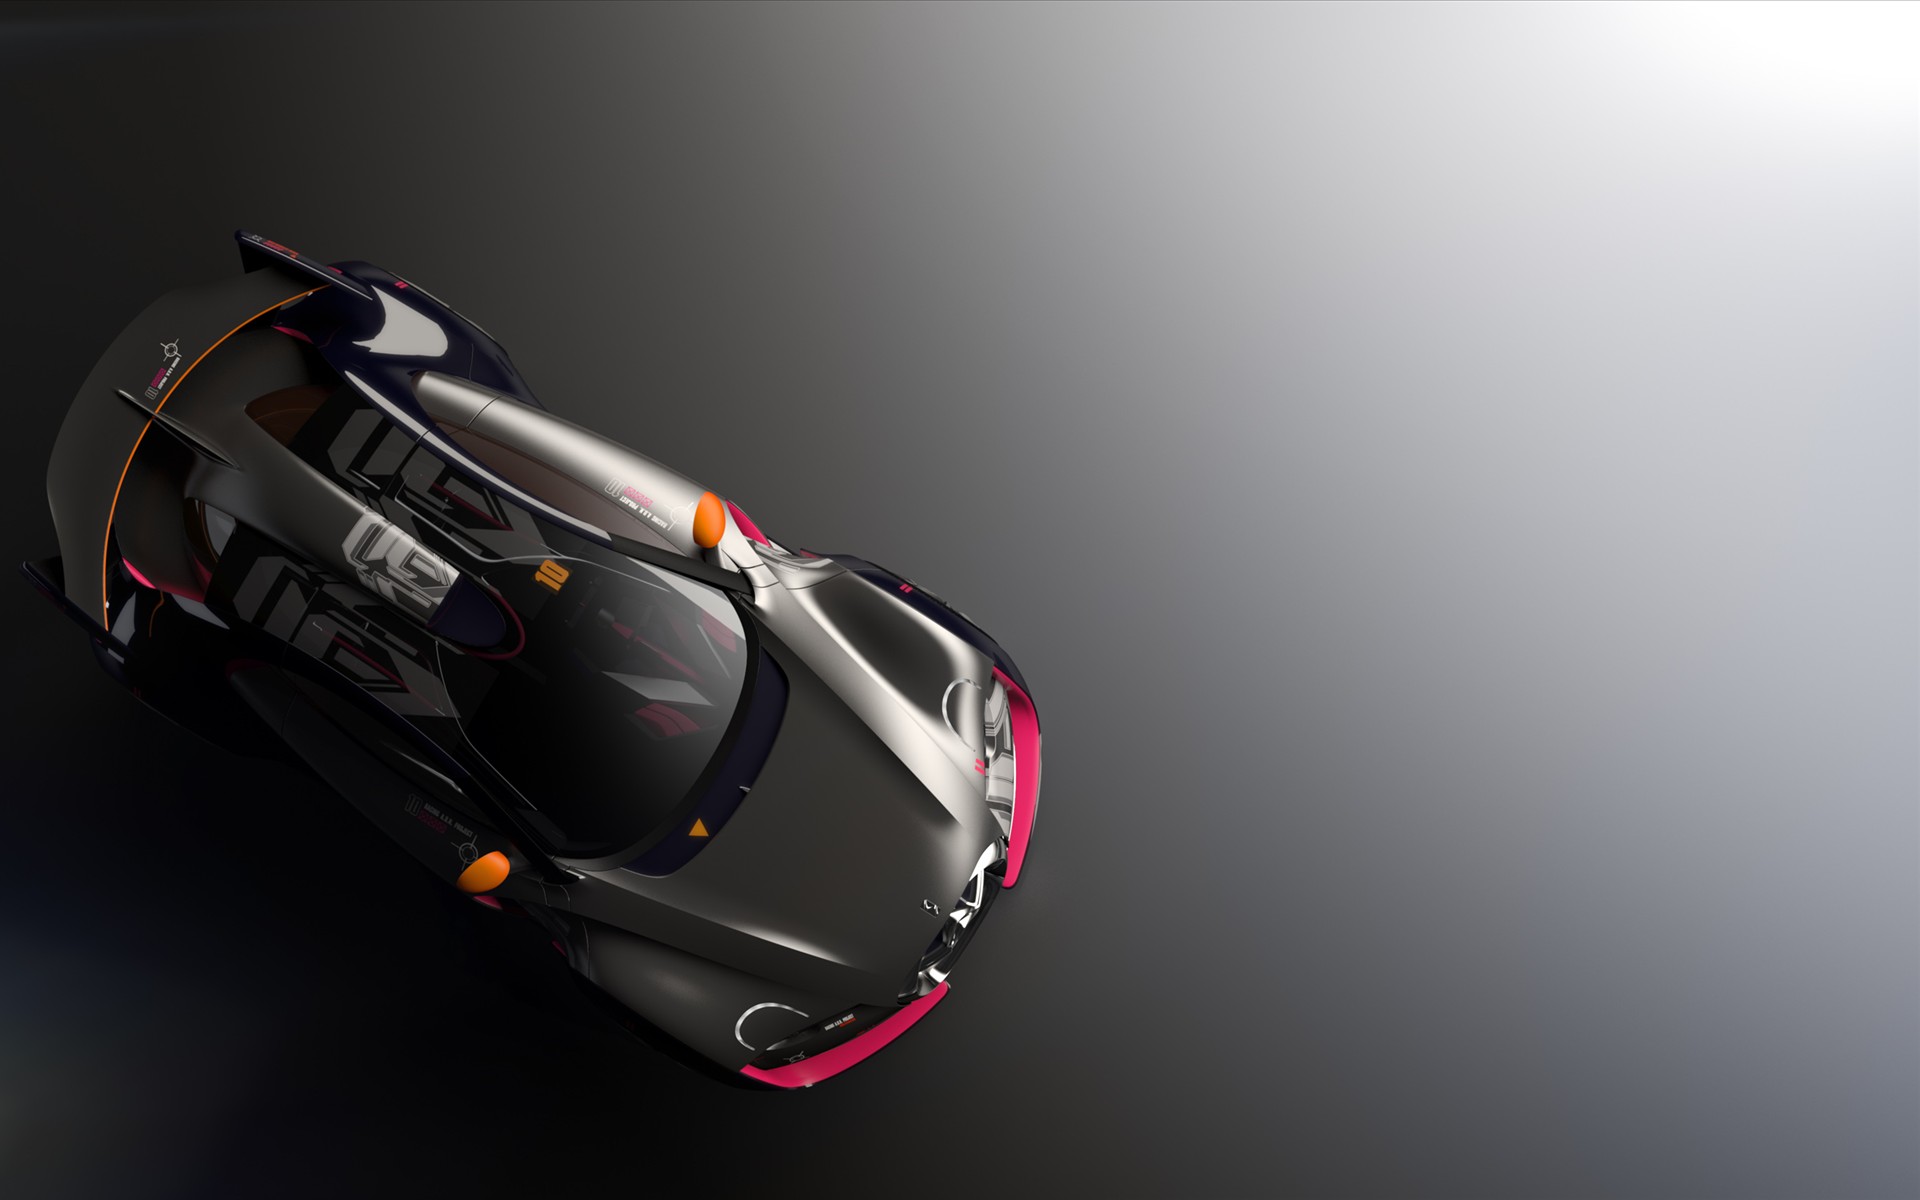 雪铁龙超级电动跑车概念设计